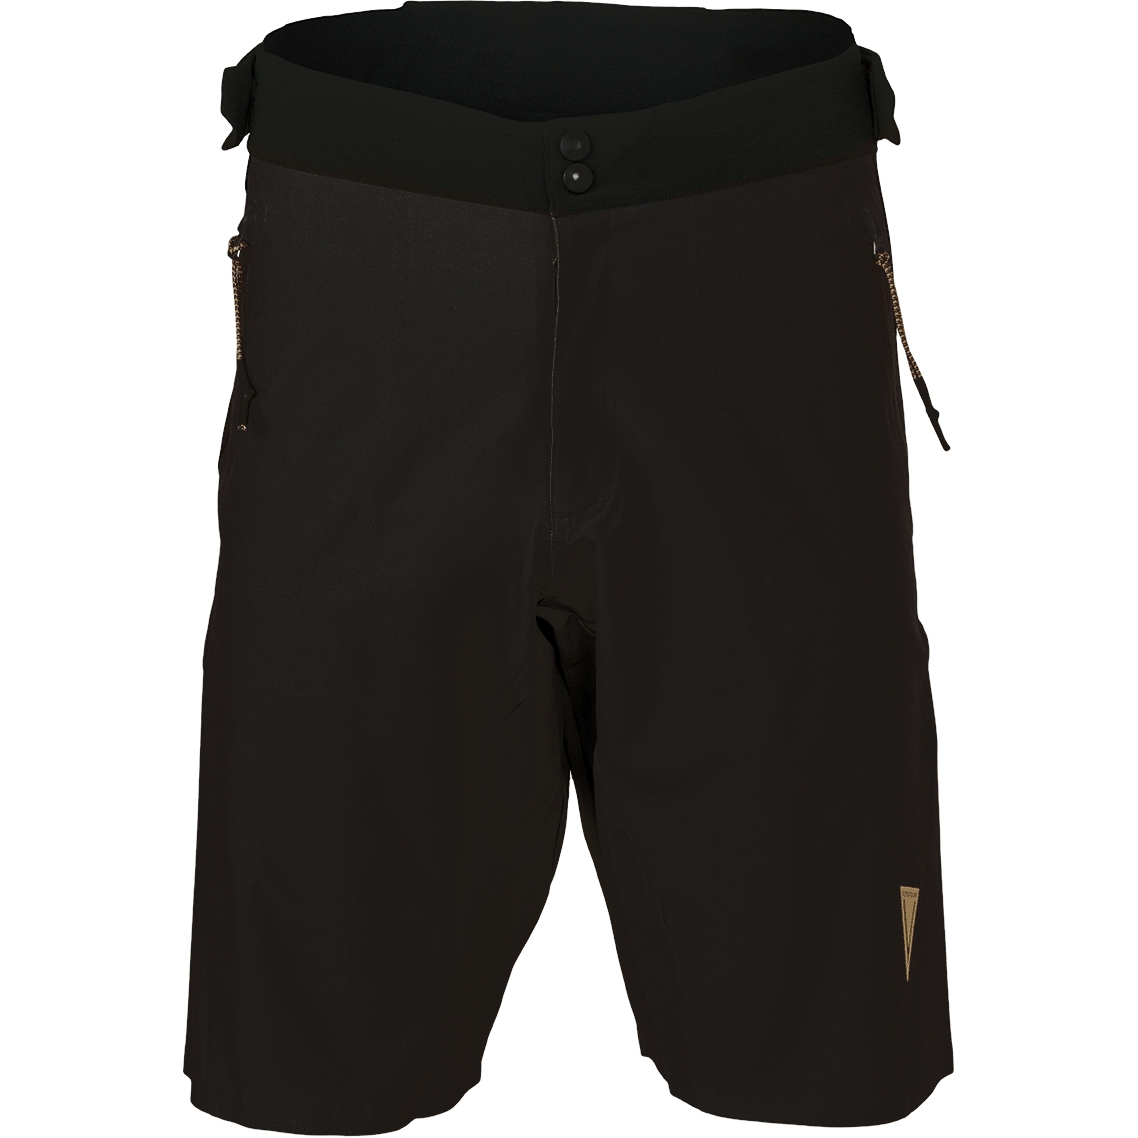 Produktbild von AGU Venture MTB Sommer Shorts - schwarz